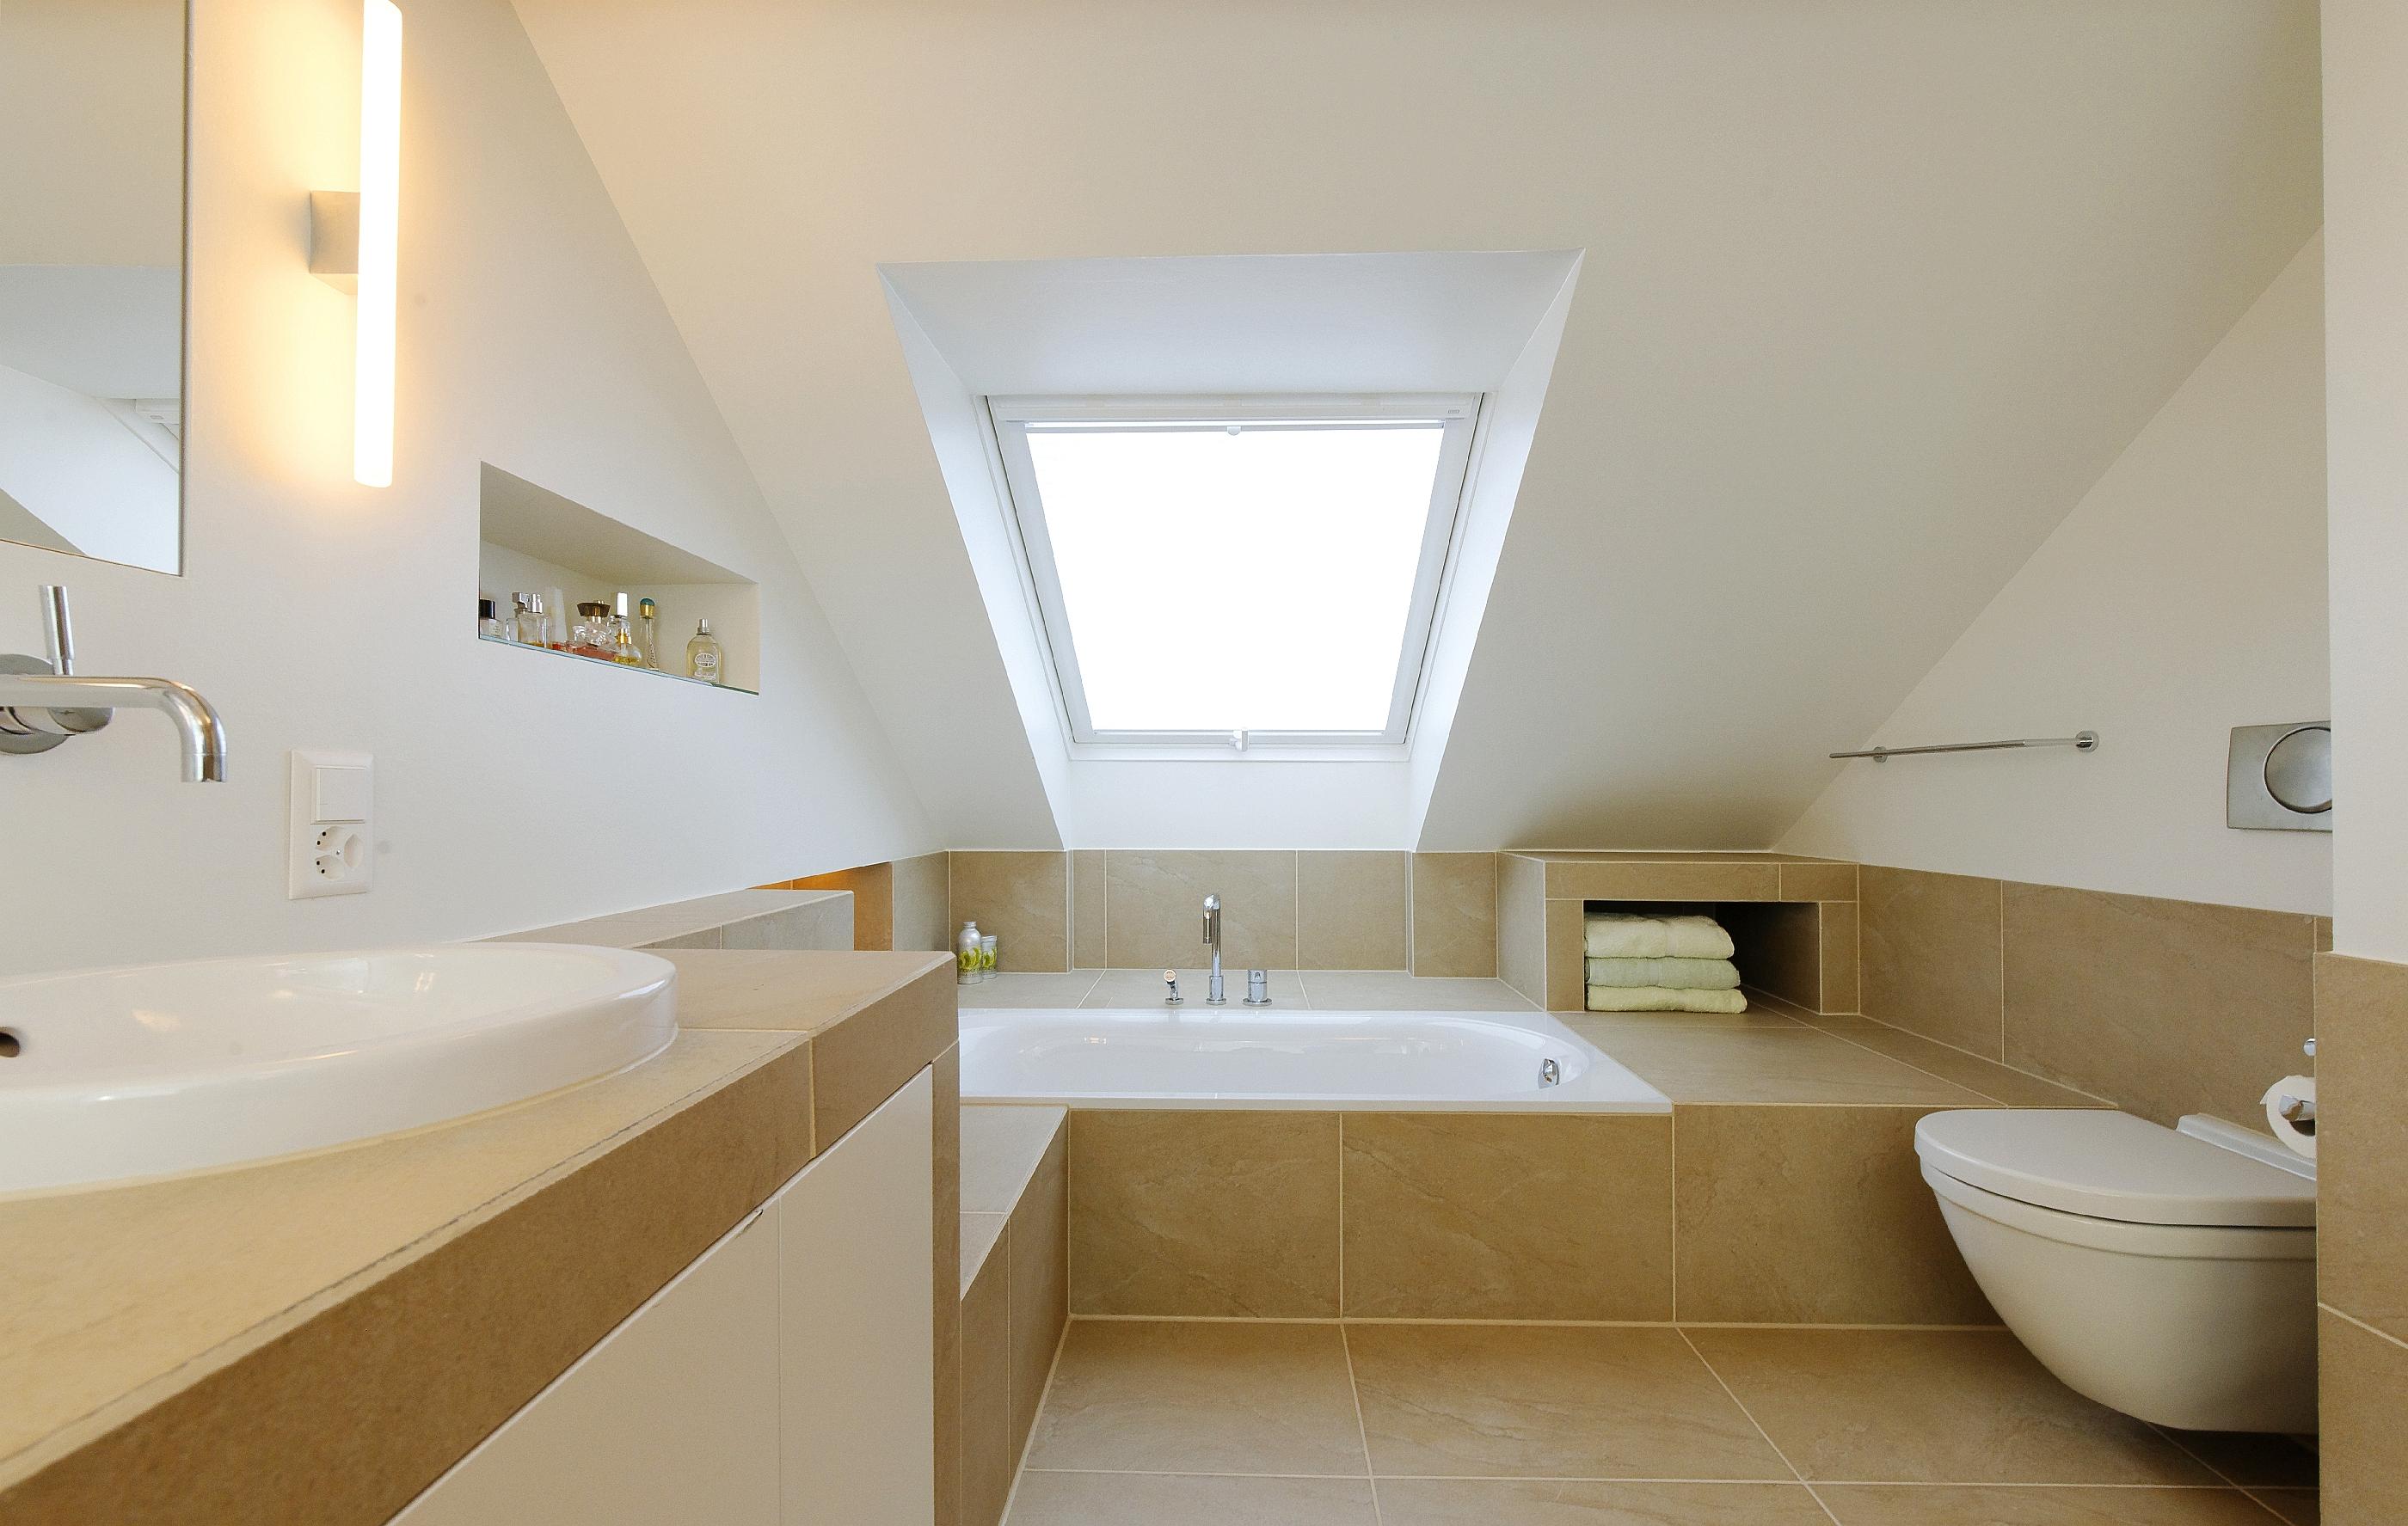 Badezimmer Umbau #dachschräge #dachfenster #fliesen ©Spaett Architekten